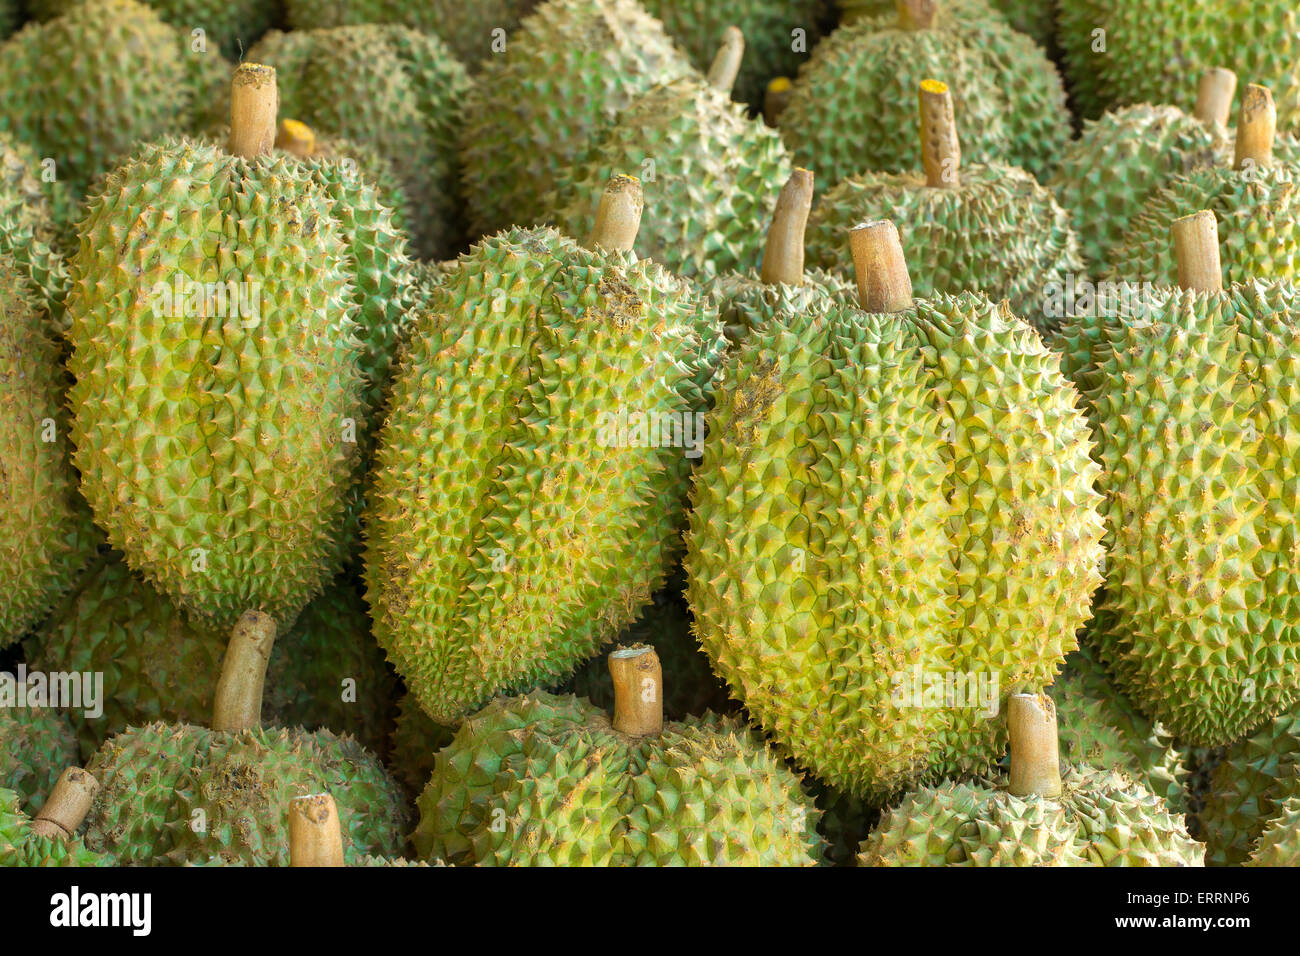 Durian savoureux fruits sur le marché Banque D'Images